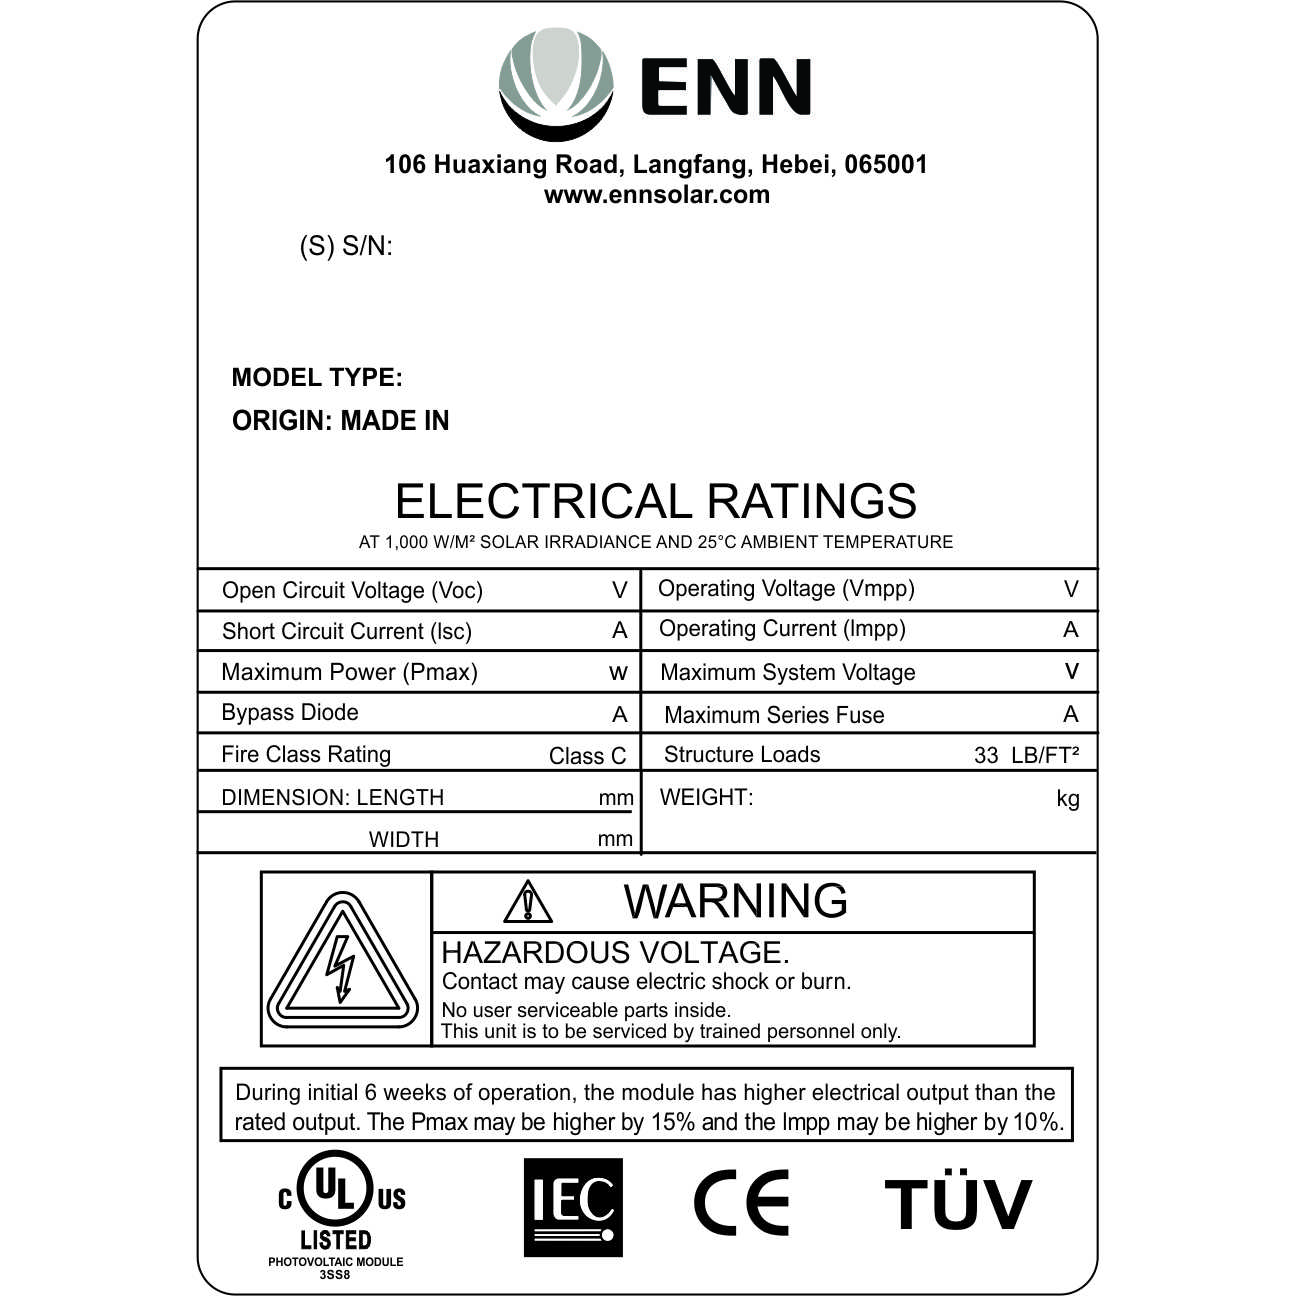 UL CE TUV compliance label